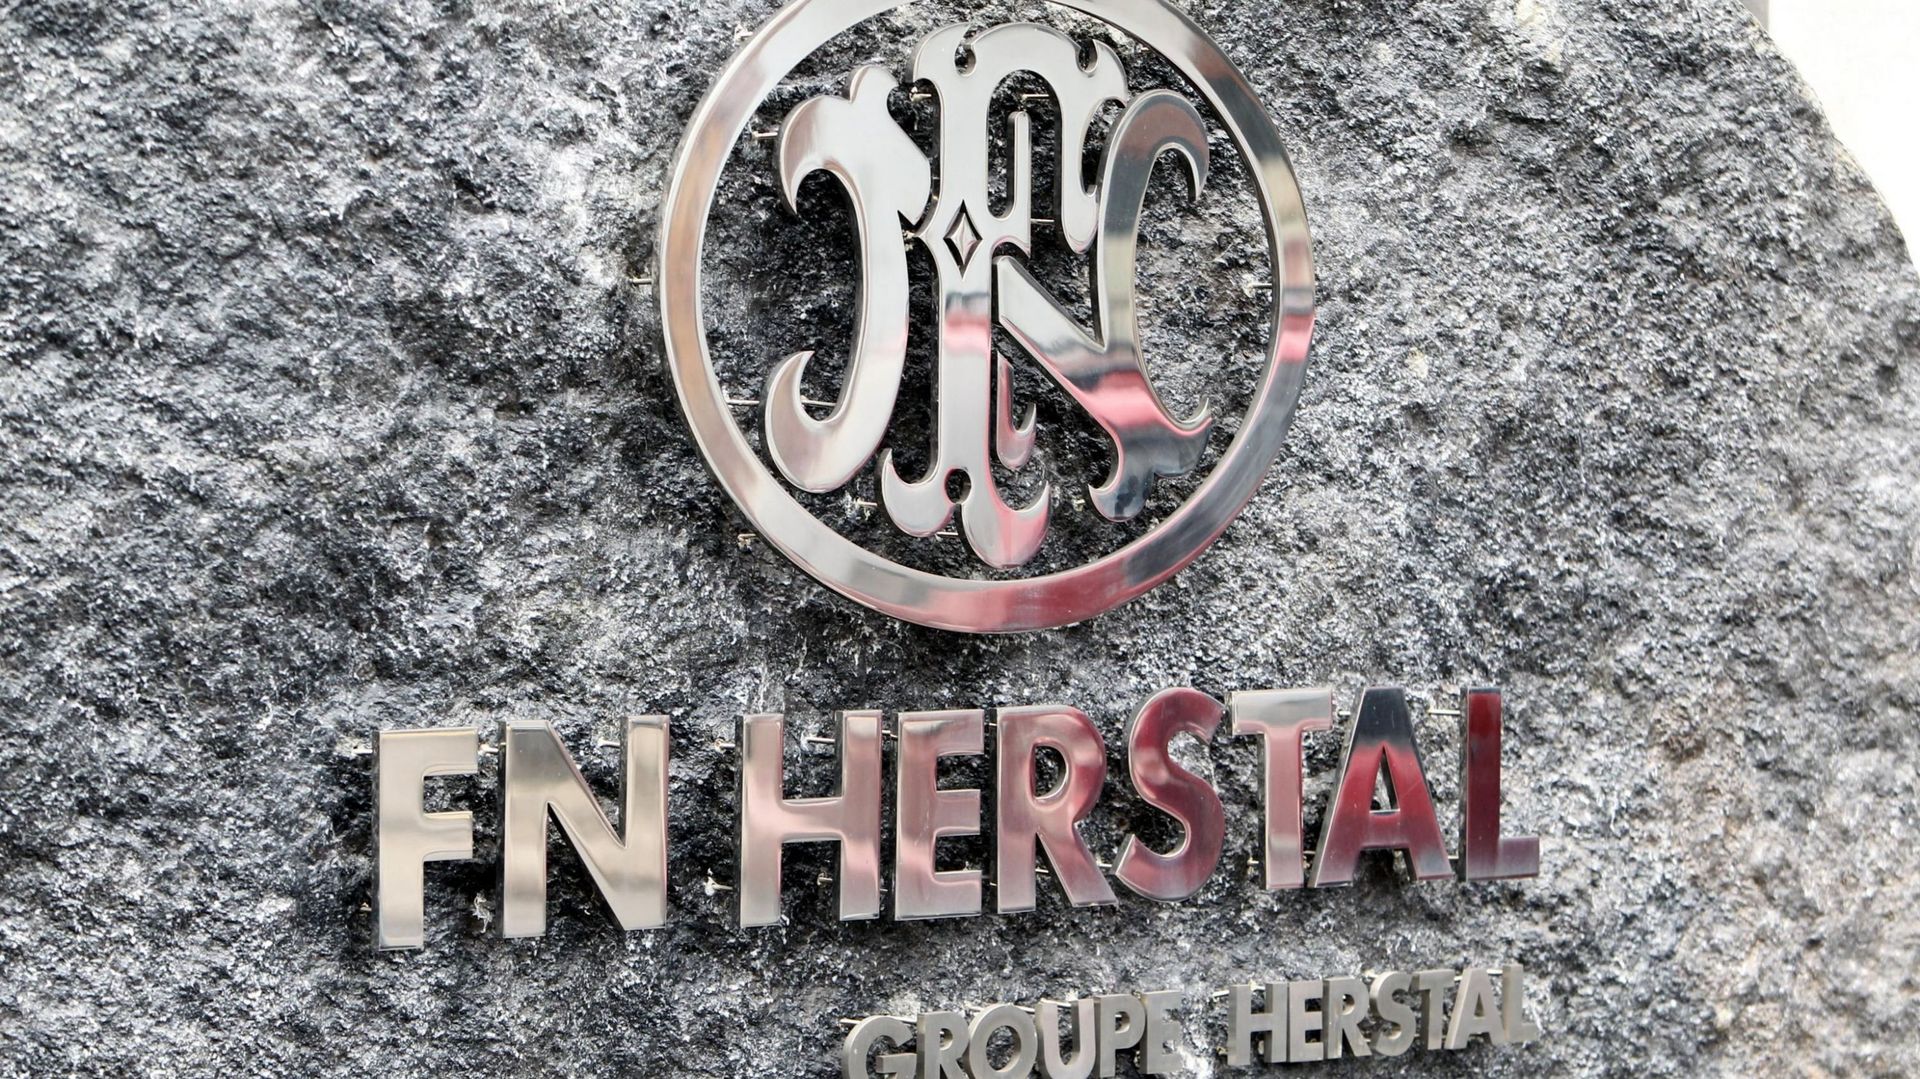 La FN Herstal a lancé vendredi une offre publique d'acquisition de Manroy.